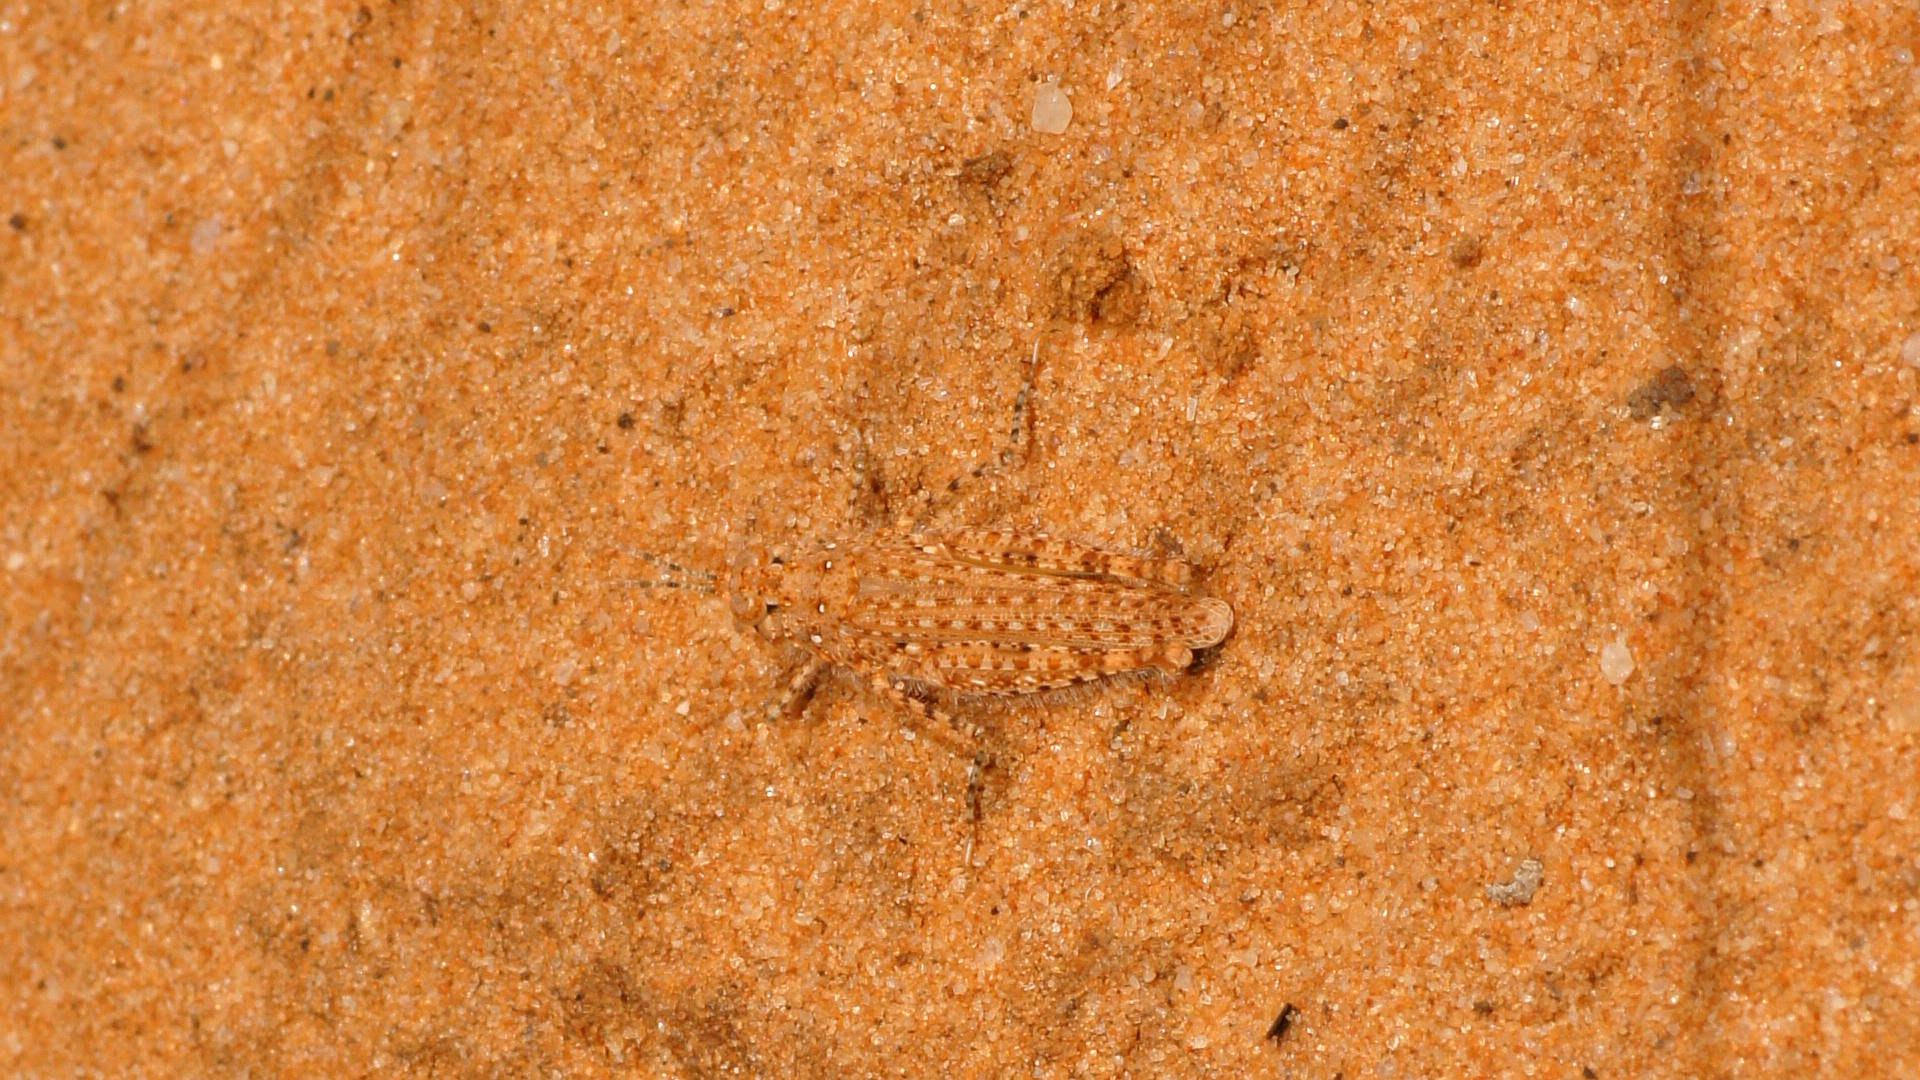 Sand Dune Grasshopper (Urnisiella rubropunctata)